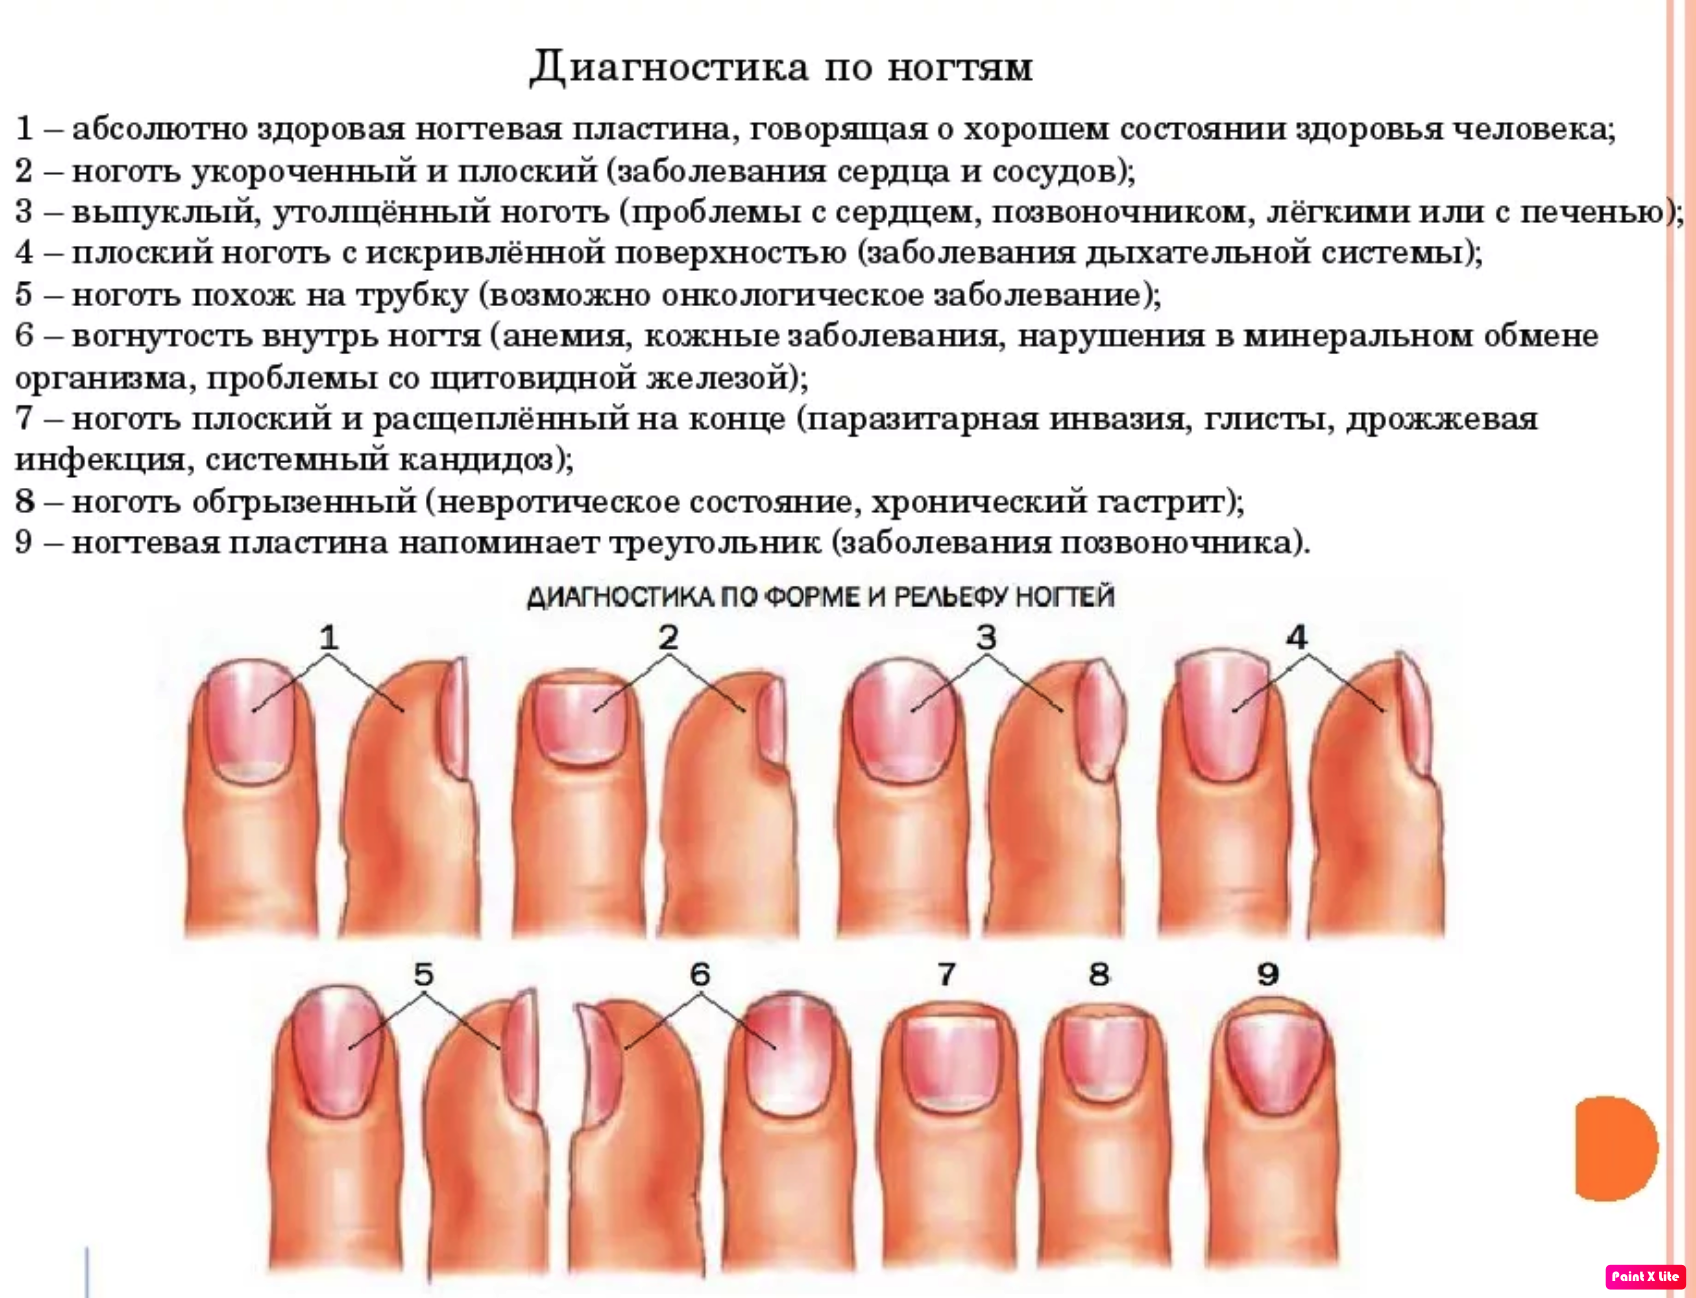 Ногти "сообщают" о диагнозе: когда лунки говорят о проблемах со здоровьем - 5 подсказок